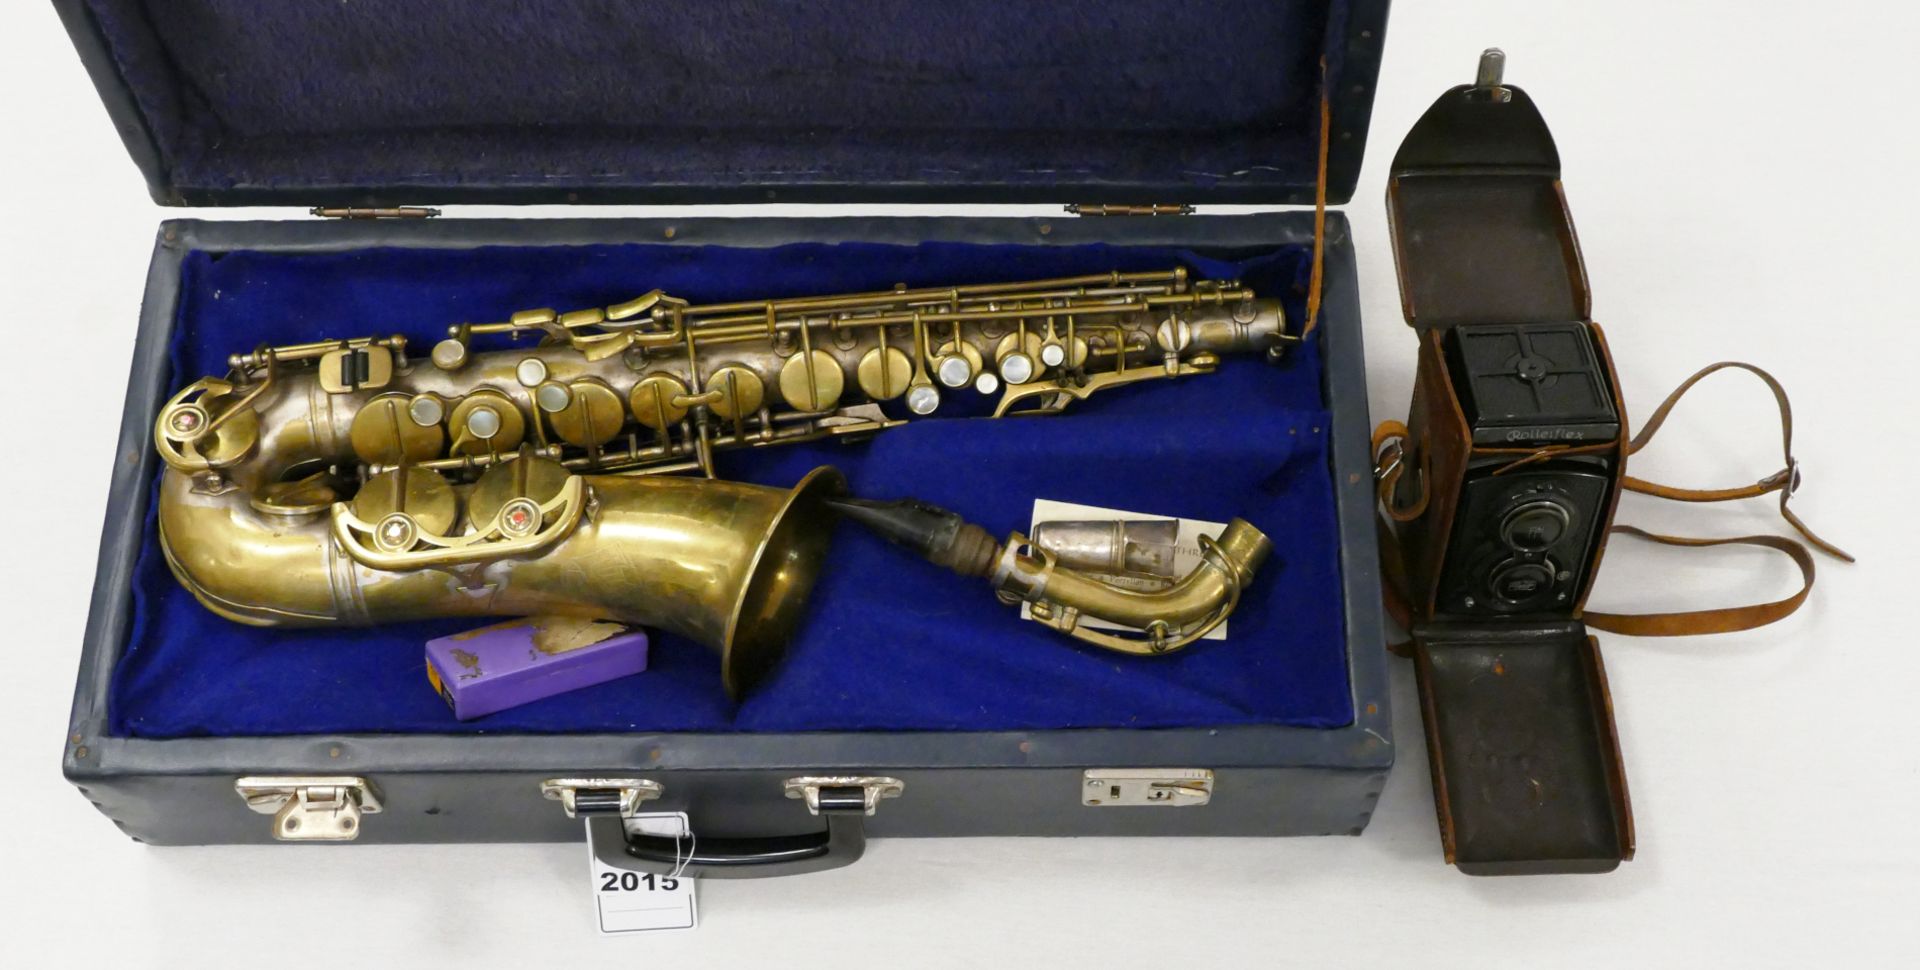 1 Saxophon WELTKLANG "Solist" Messing z.T. mit Perlmutt, H ca. 68cm, min. Zubehör im Tragekoffer, 